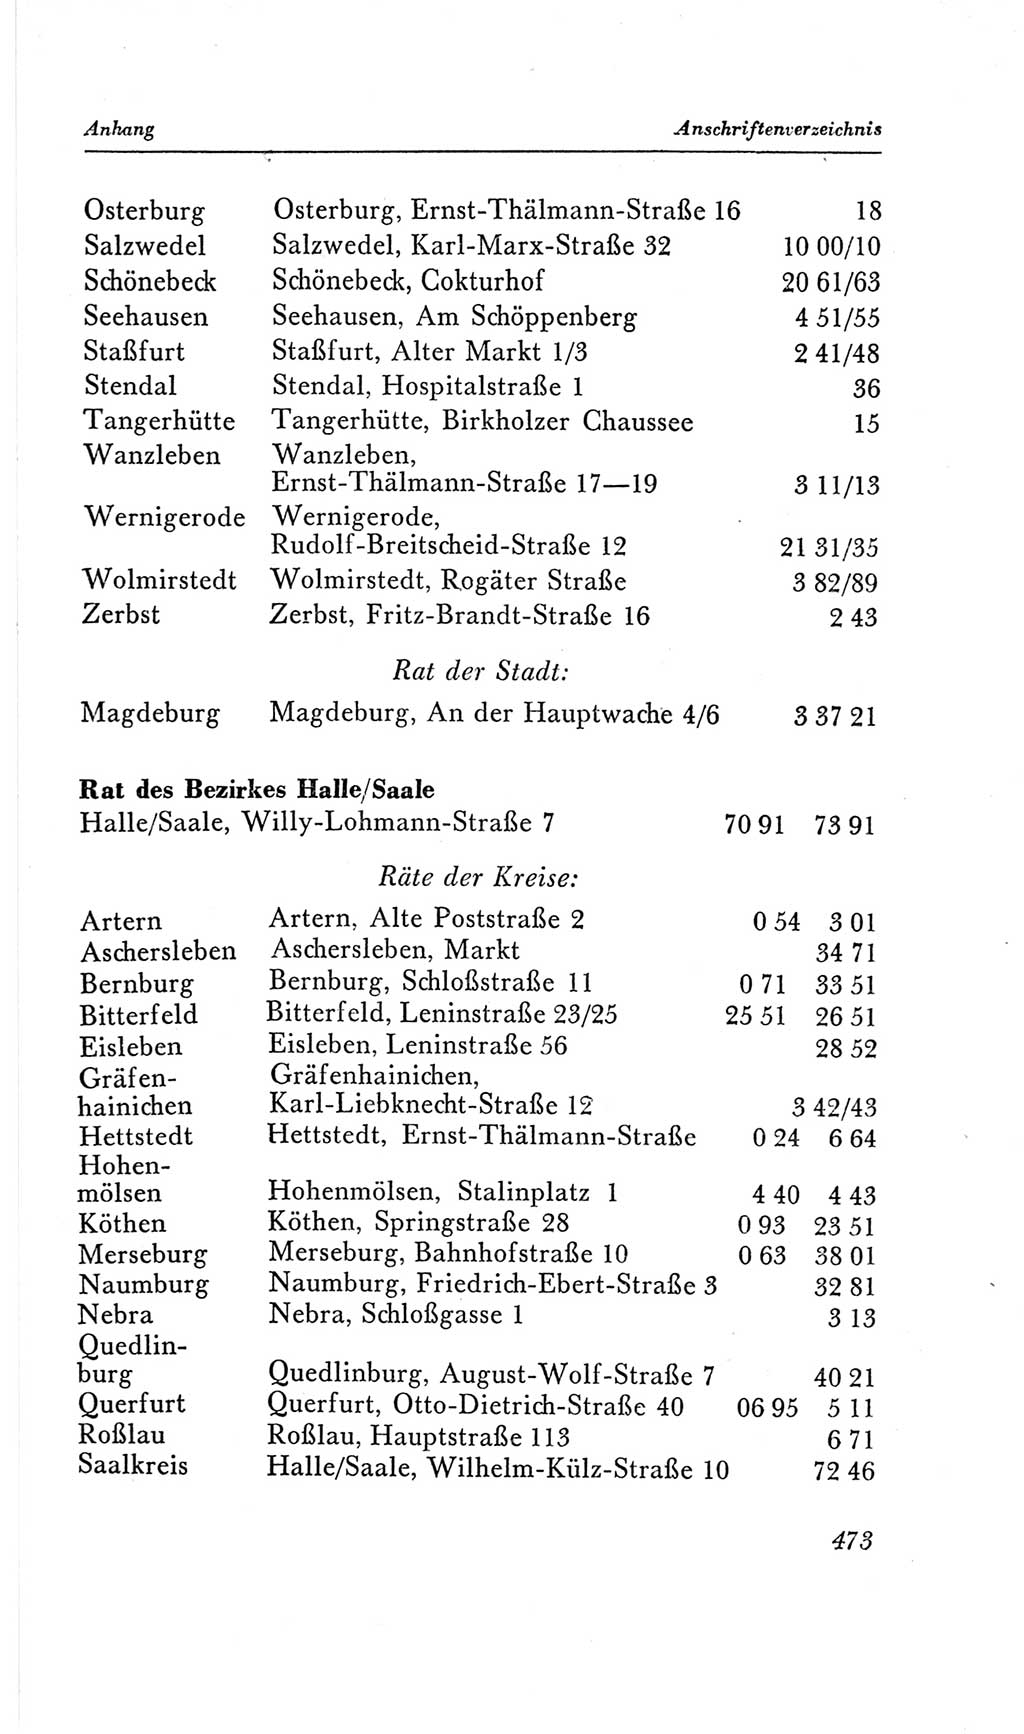 Handbuch der Volkskammer (VK) der Deutschen Demokratischen Republik (DDR), 2. Wahlperiode 1954-1958, Seite 473 (Hdb. VK. DDR, 2. WP. 1954-1958, S. 473)